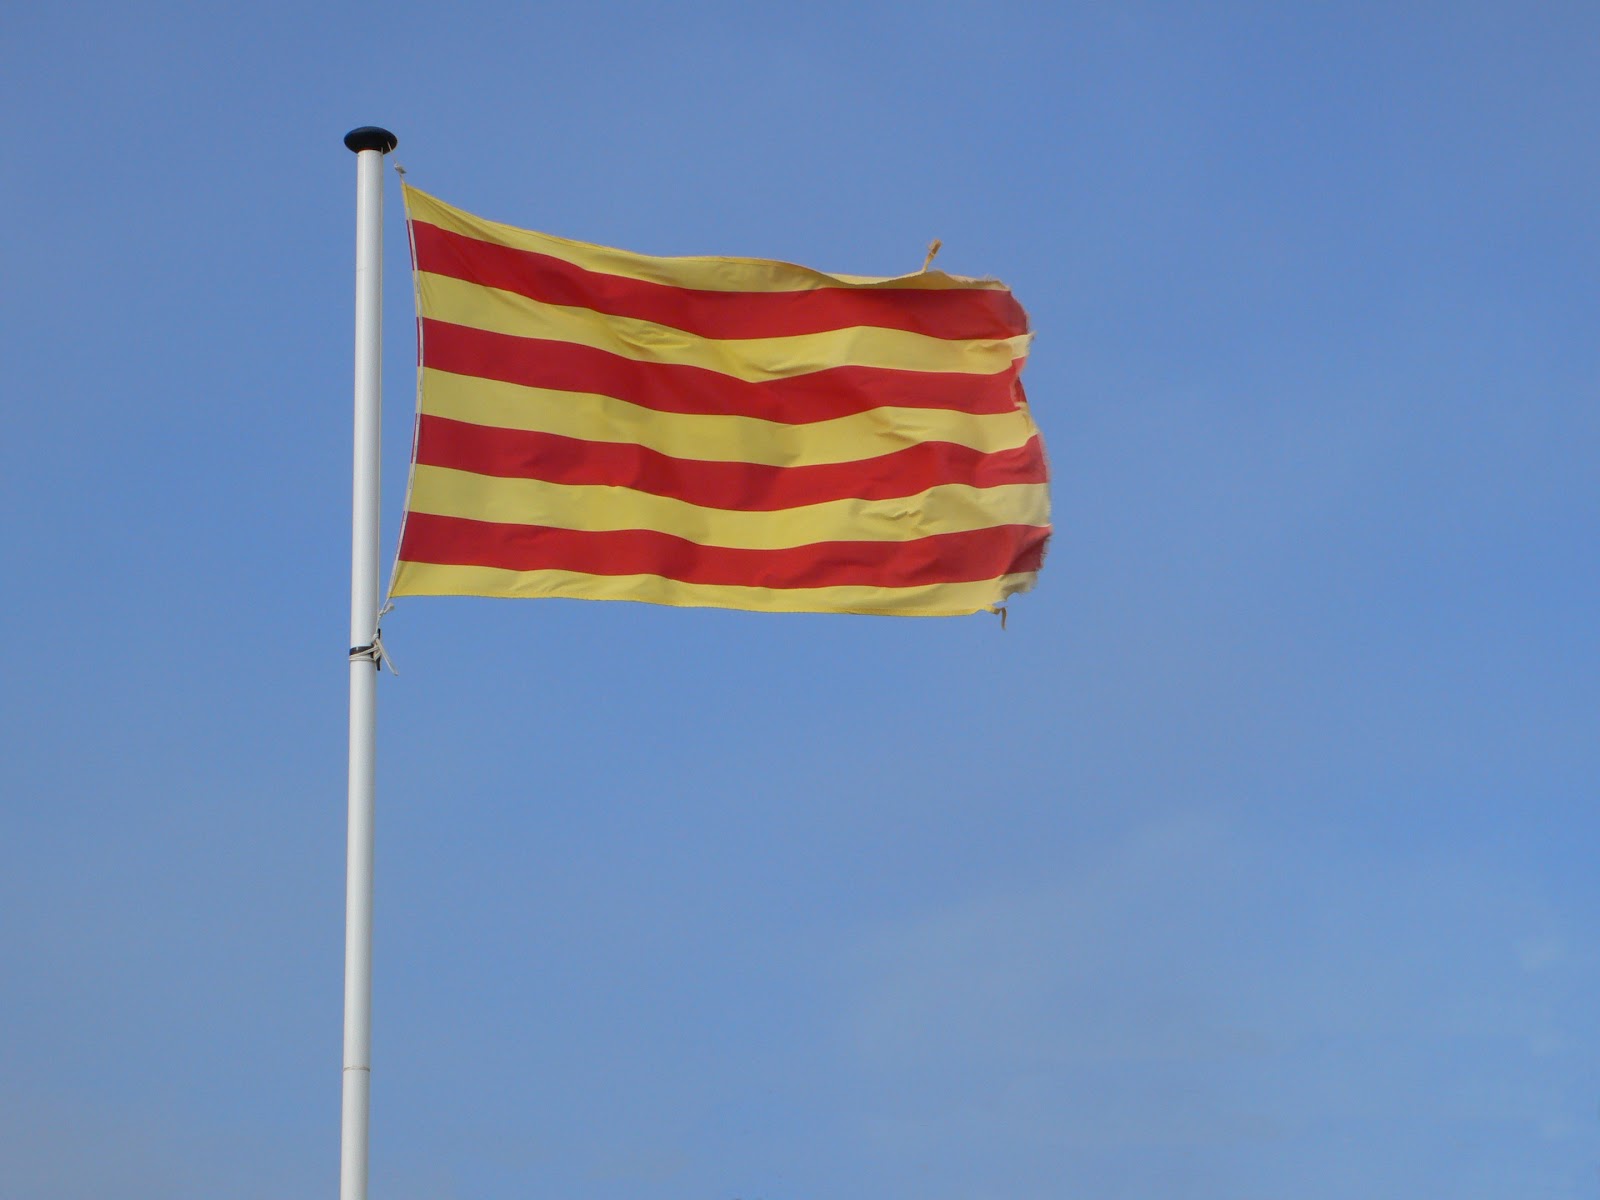 http://1.bp.blogspot.com/-pRNV733x4Aw/T3r_gyGnslI/AAAAAAAAABA/_veV7JyPf4o/s1600/Catalunya+Flag.jpg